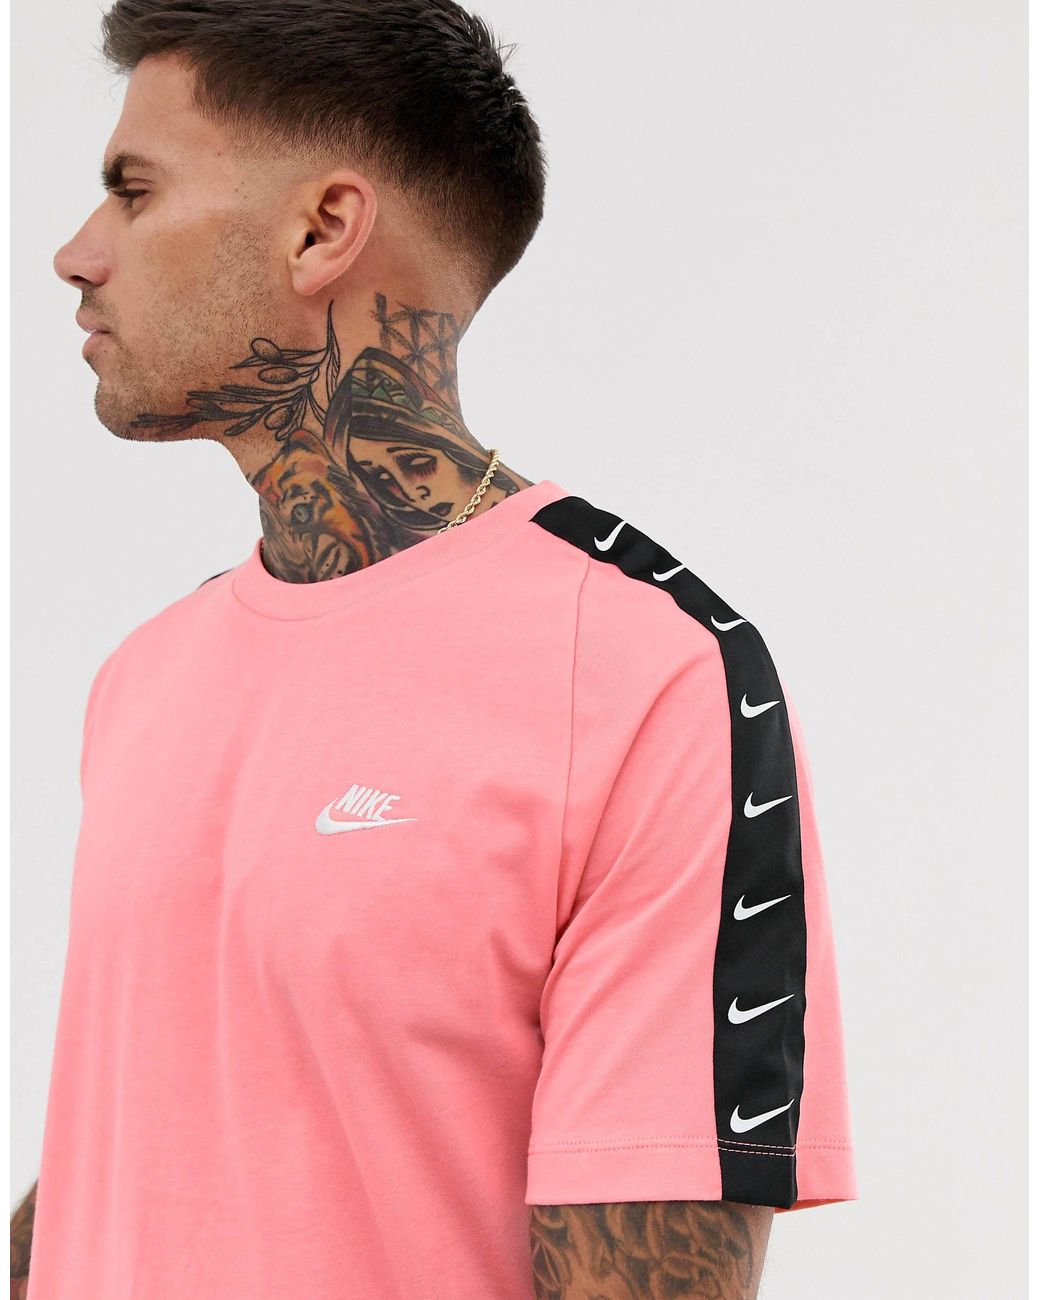 Petrify Flare hostage Camiseta rosa con cinta del logo Nike de hombre de color Rosa | Lyst